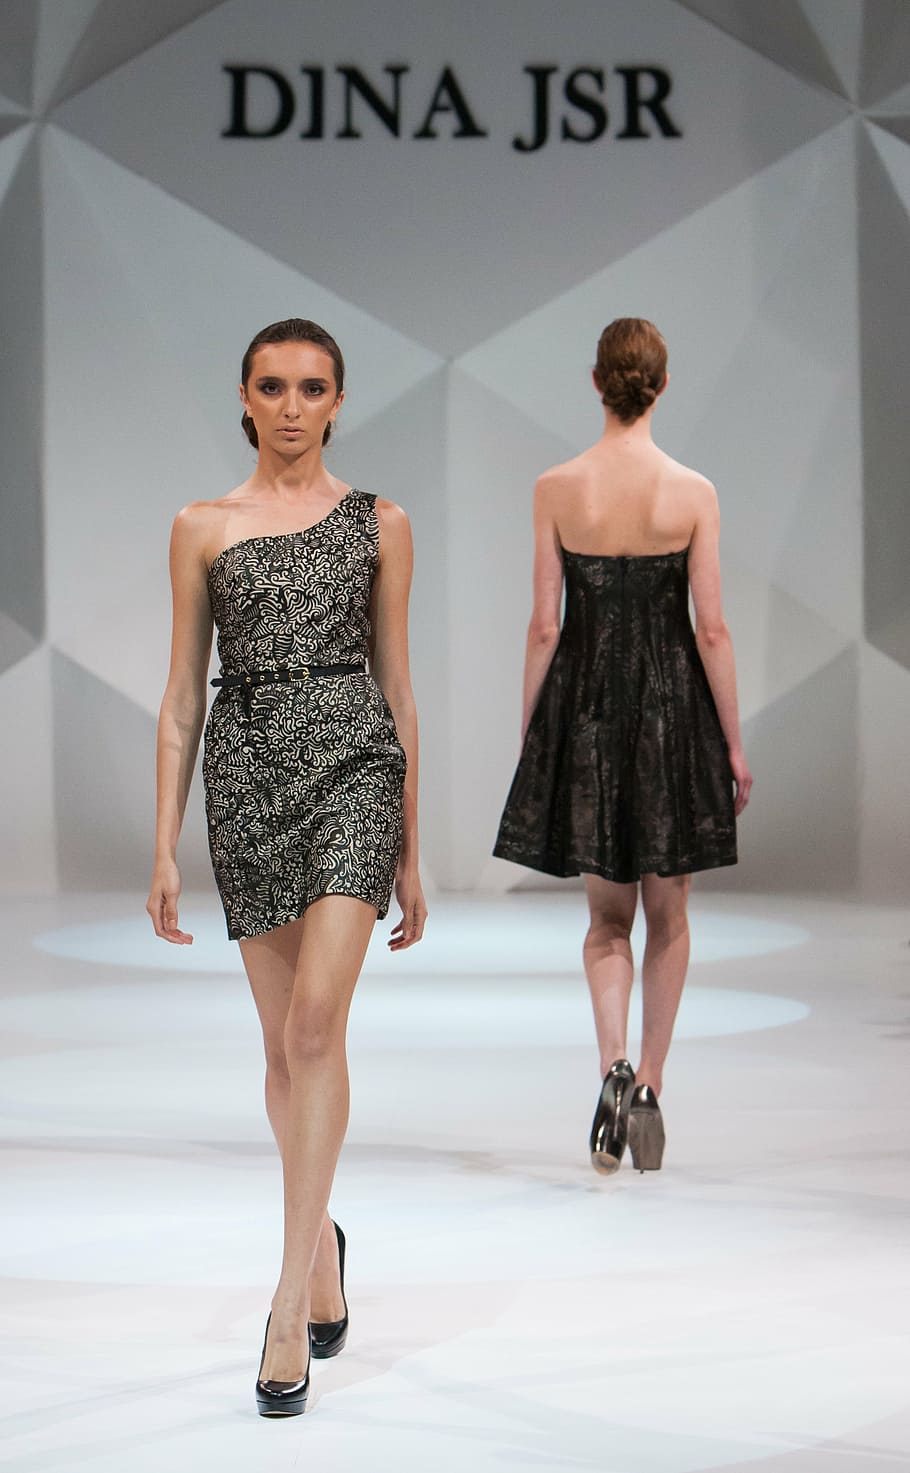 HD wallpaper: two women walking on Dina JSR runway, fashion show, catwalk,  model | Wallpaper Flare